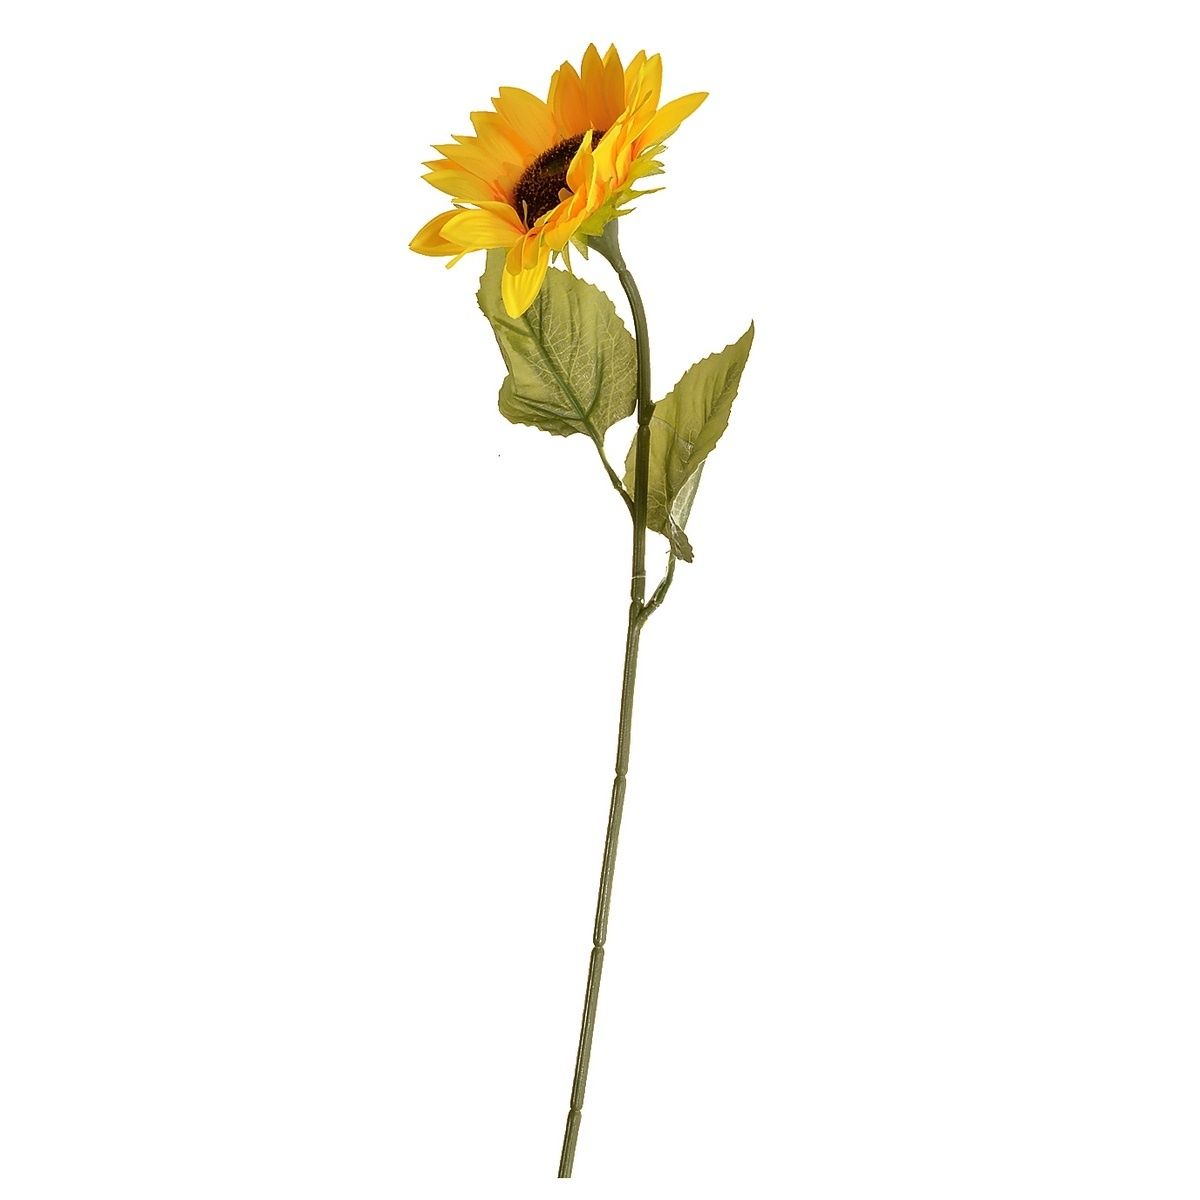 Umělá květina Slunečnice žlutá, 68 cm - 4home.cz